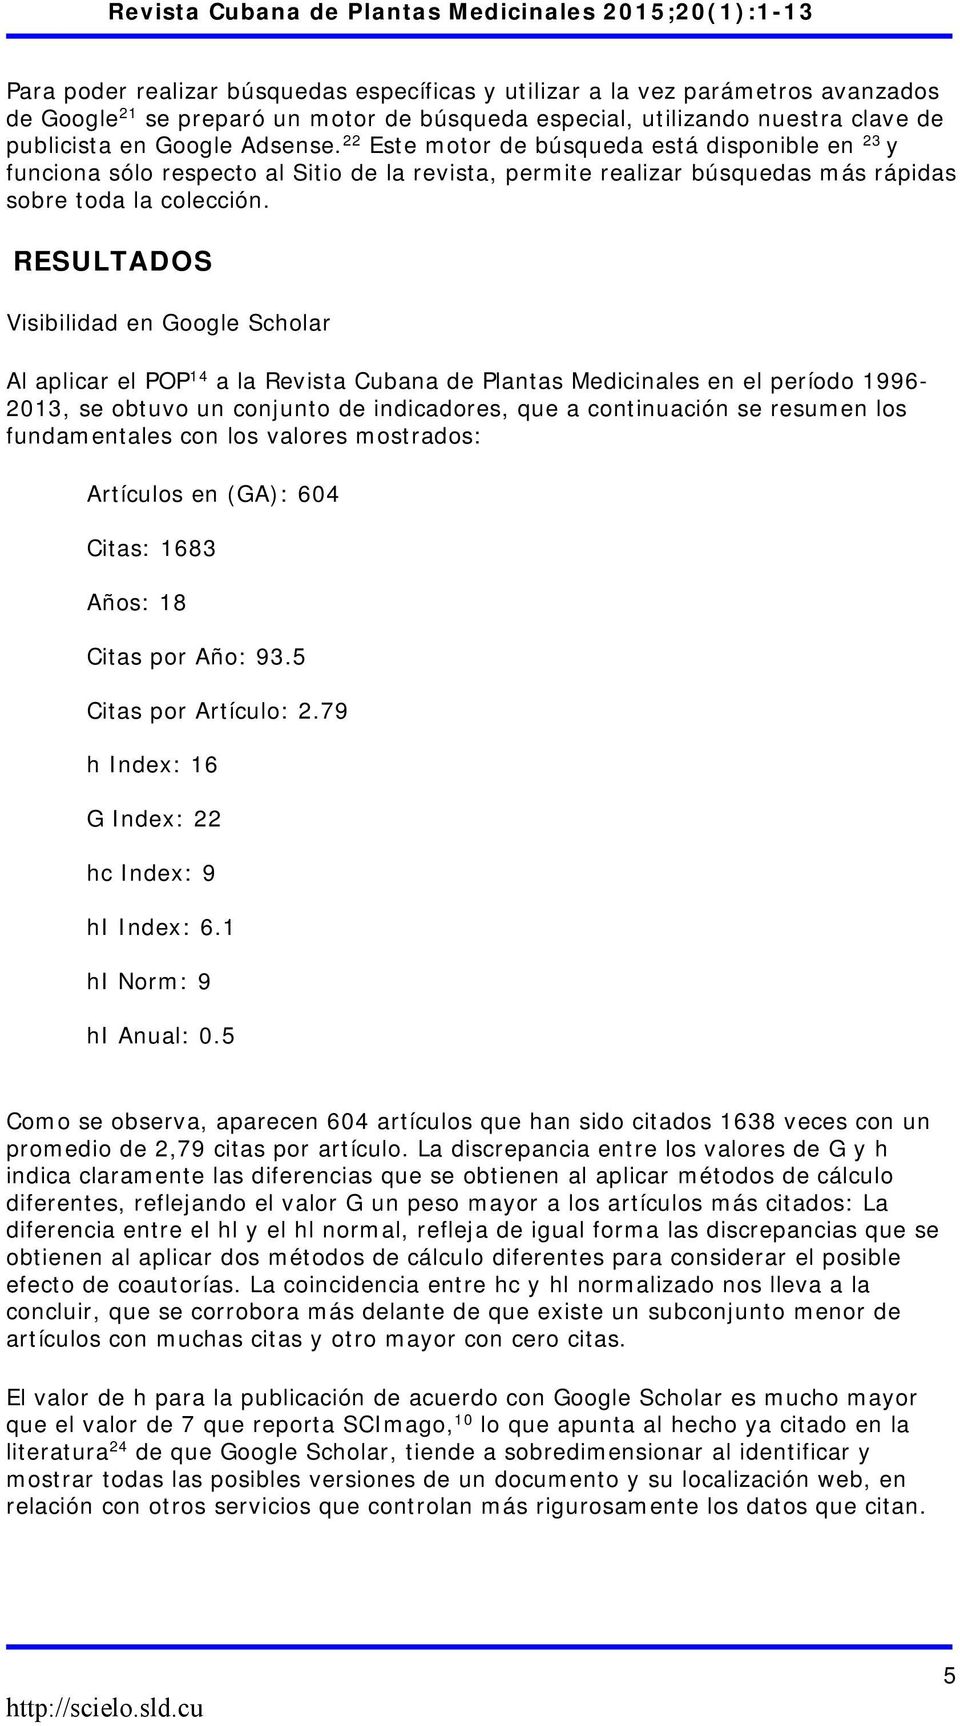 RESULTADOS Visibilidad en Google Scholar Al aplicar el POP 14 a la Revista Cubana de Plantas Medicinales en el período 1996-2013, se obtuvo un conjunto de indicadores, que a continuación se resumen